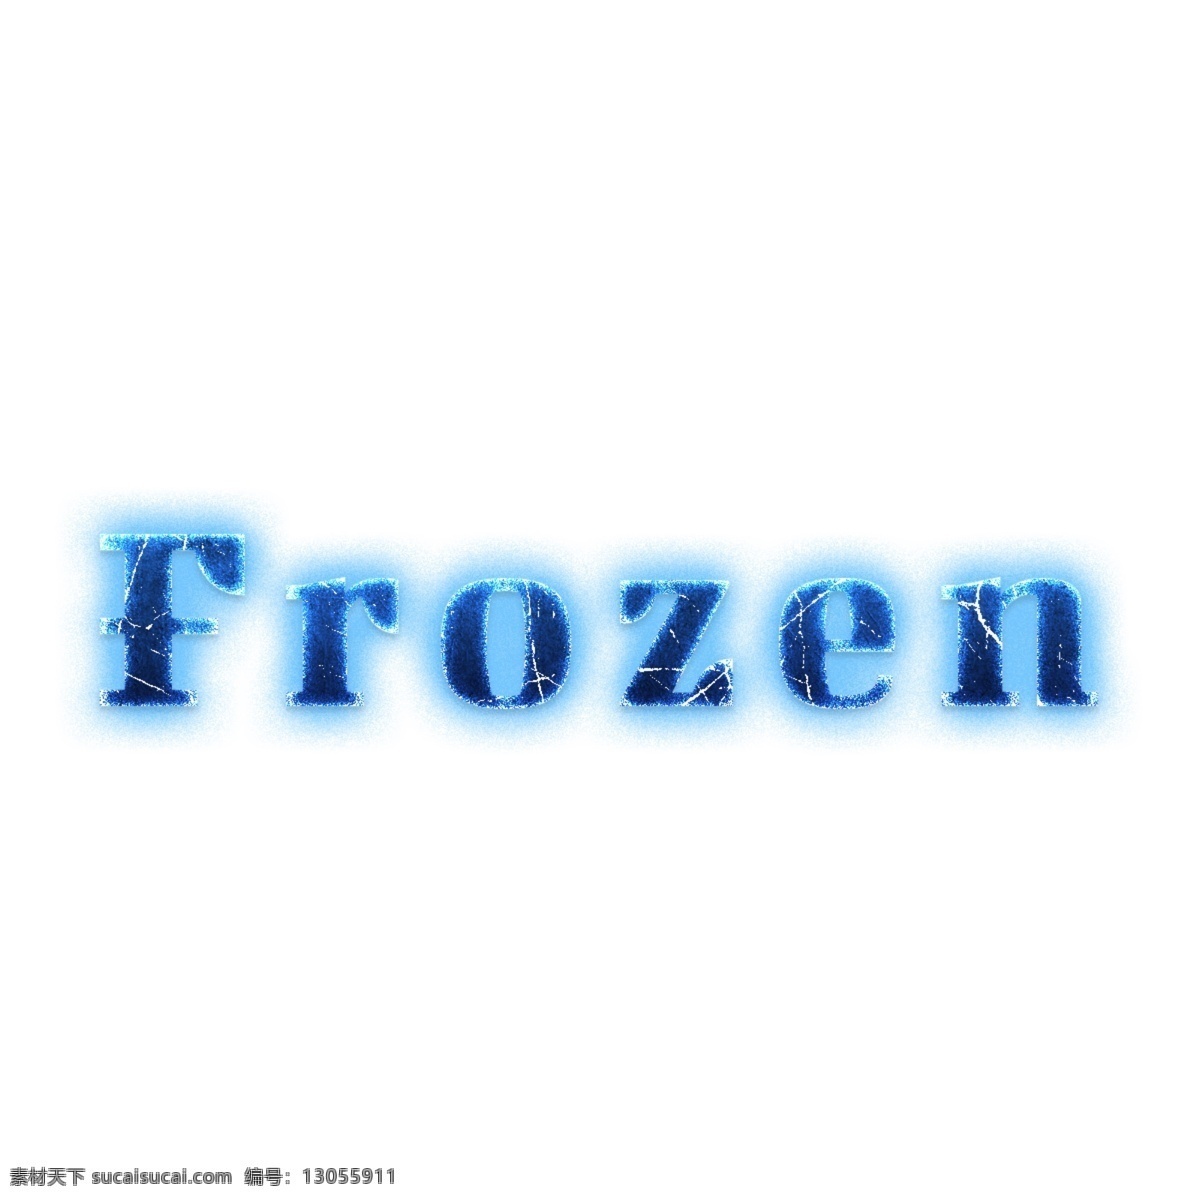 梦幻 色彩 冷冻 简单 字体 梦想 颜色 冻结的 蓝色 冰 美丽 背景 简单的字体 edi